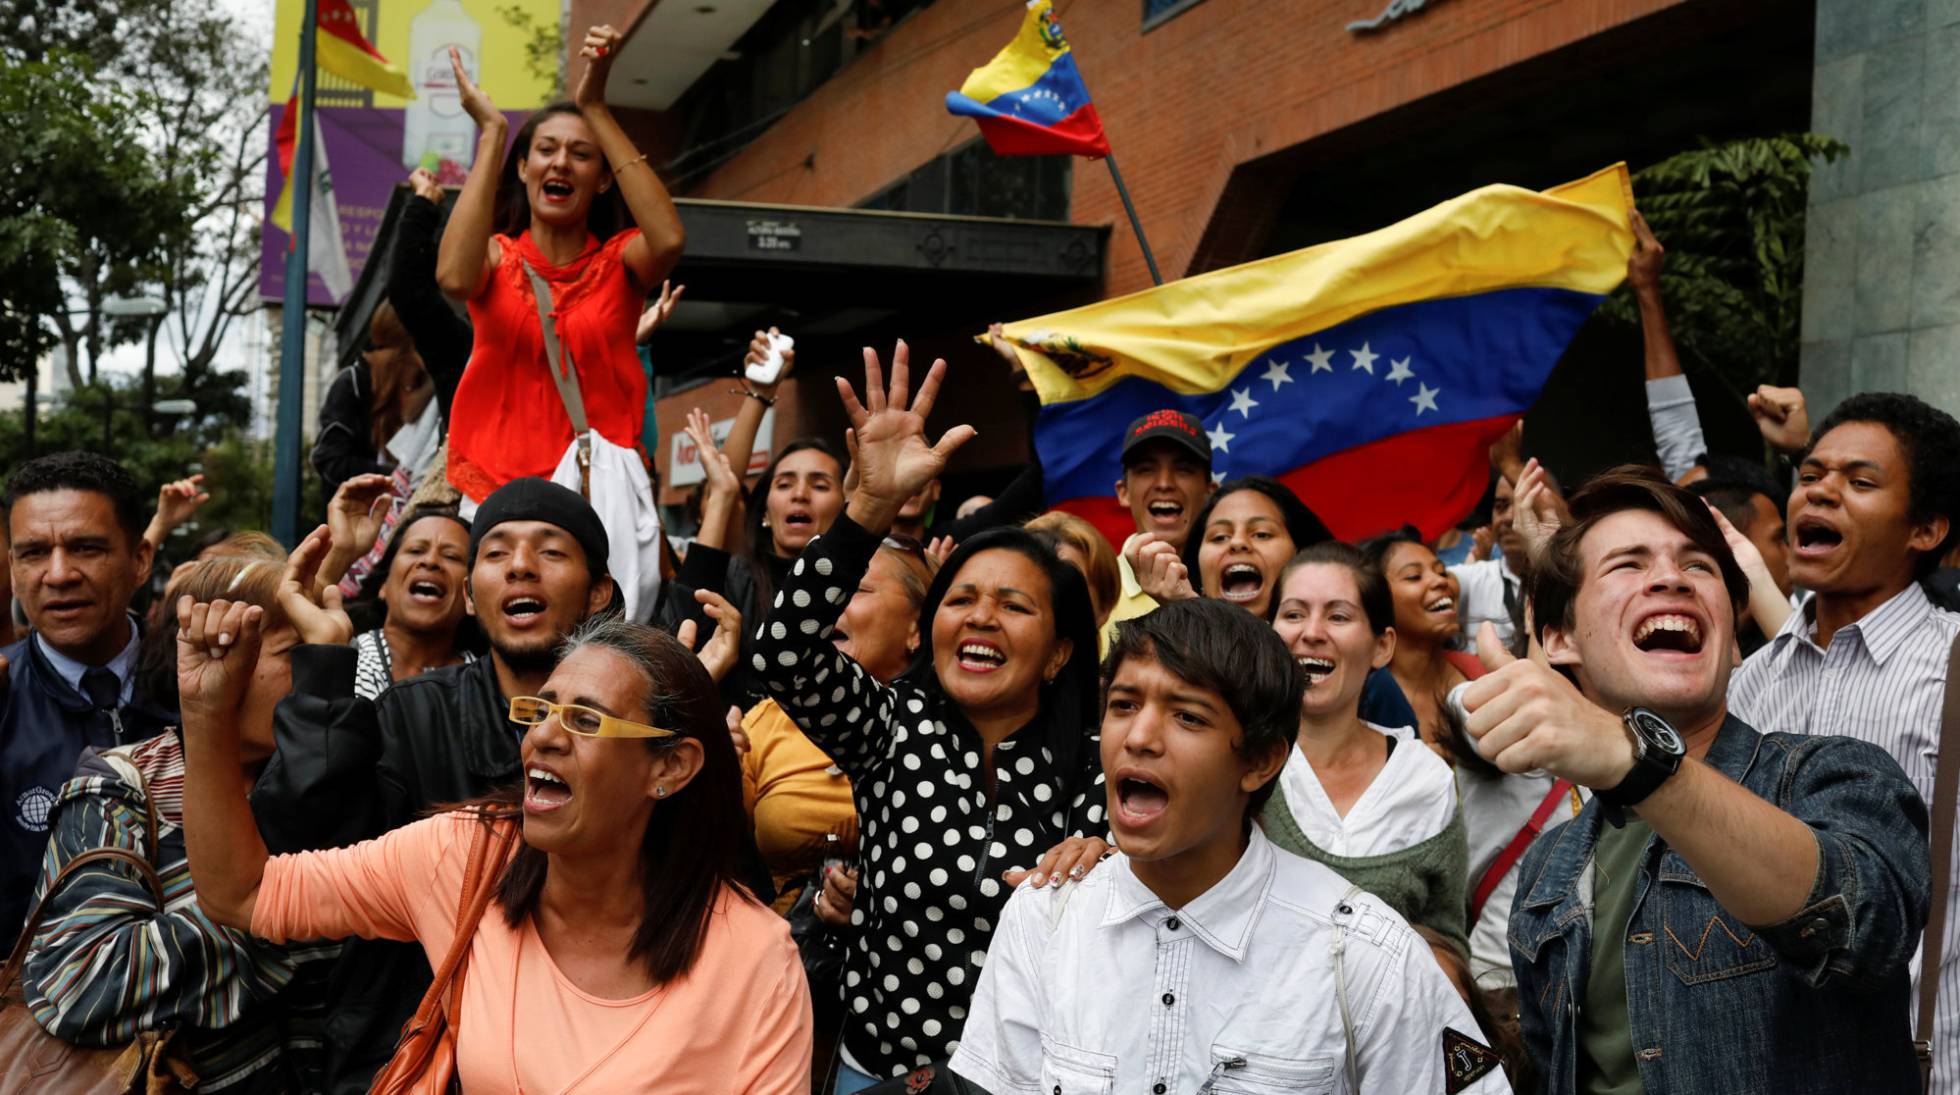 La OEA pide a Maduro que cancele las elecciones presidenciales de abril